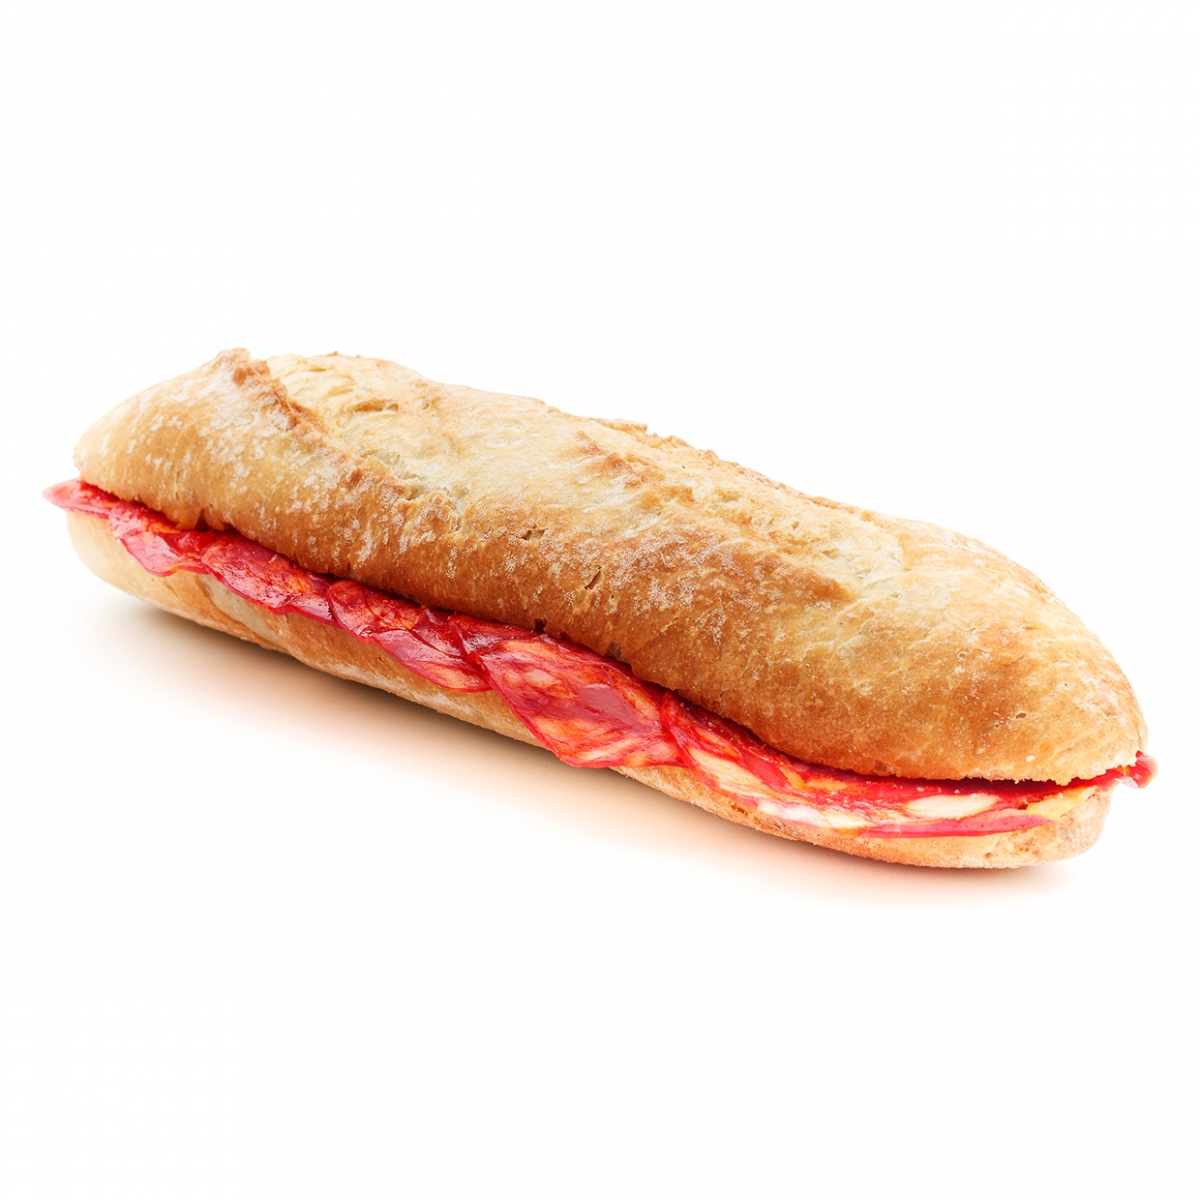 Imagen en la que se ve una barra de pan abierta por la mitad con rodajas de chorizo en su interior